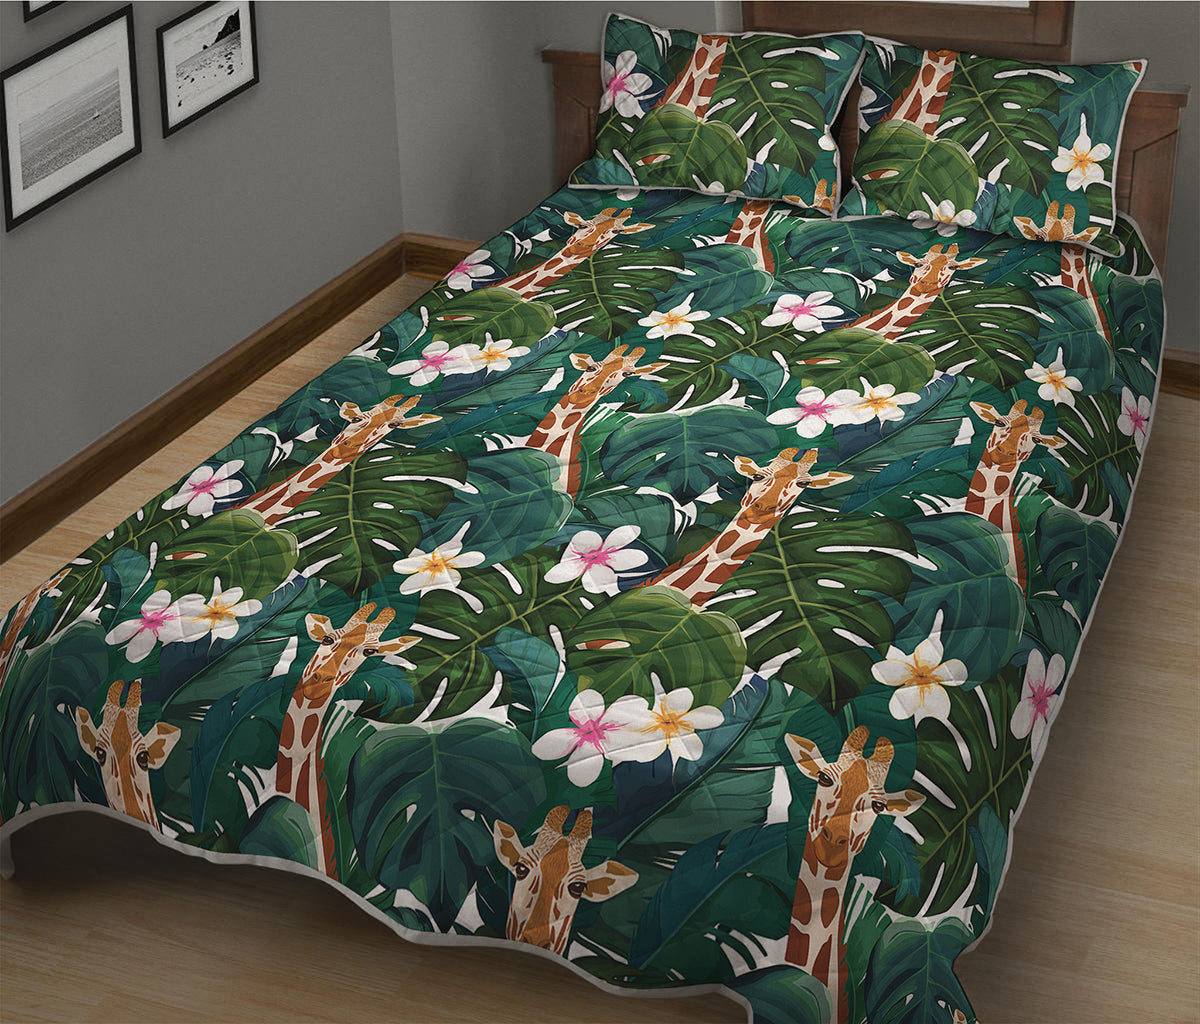 Tropical Giraffe Pattern Print Quilt Bed Set